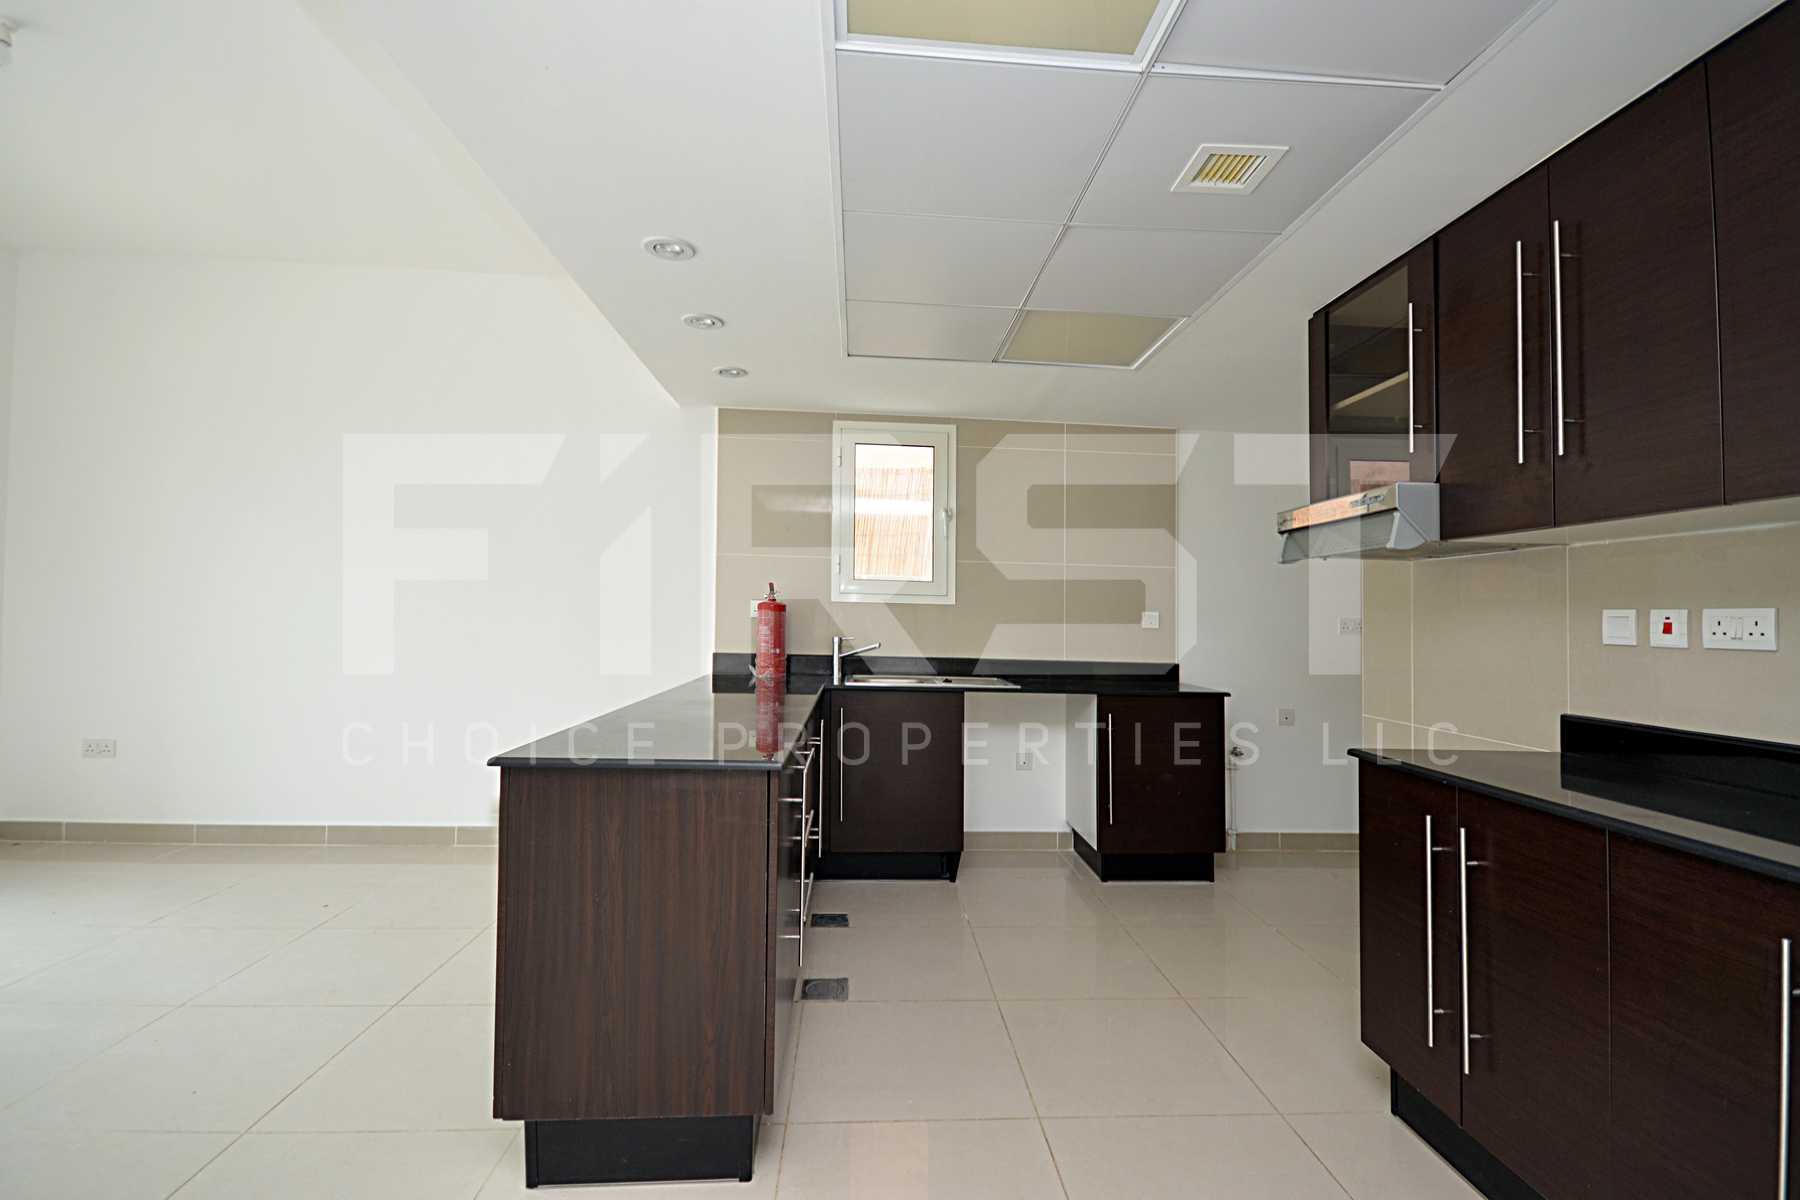 Internal Photo of 4 Bedroom Villa in Al Reef Villas Al Reef Abu Dhabi UAE 265.5 sq.m 2858 sq.ft (6).jpg